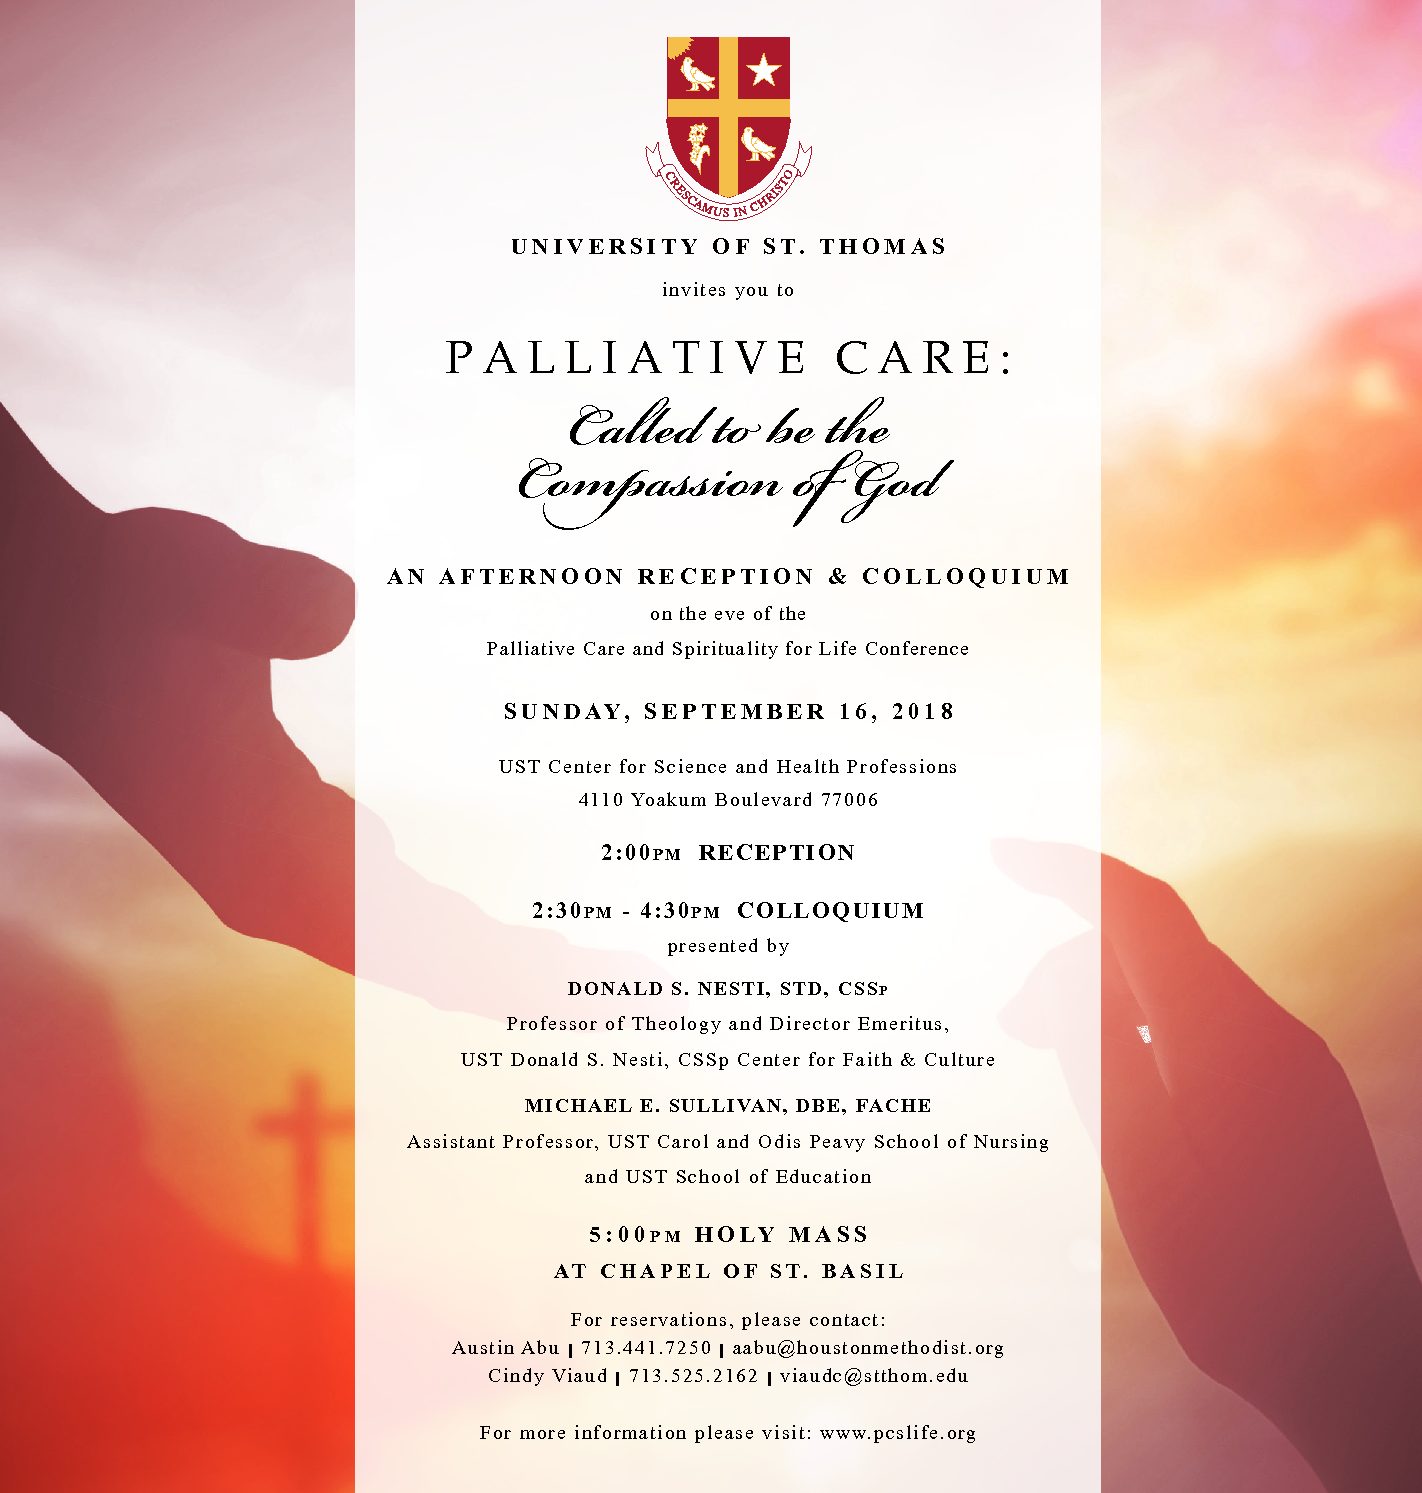 University of St. Thomas Palliative Care Reception & Colloquium - Sept. 16